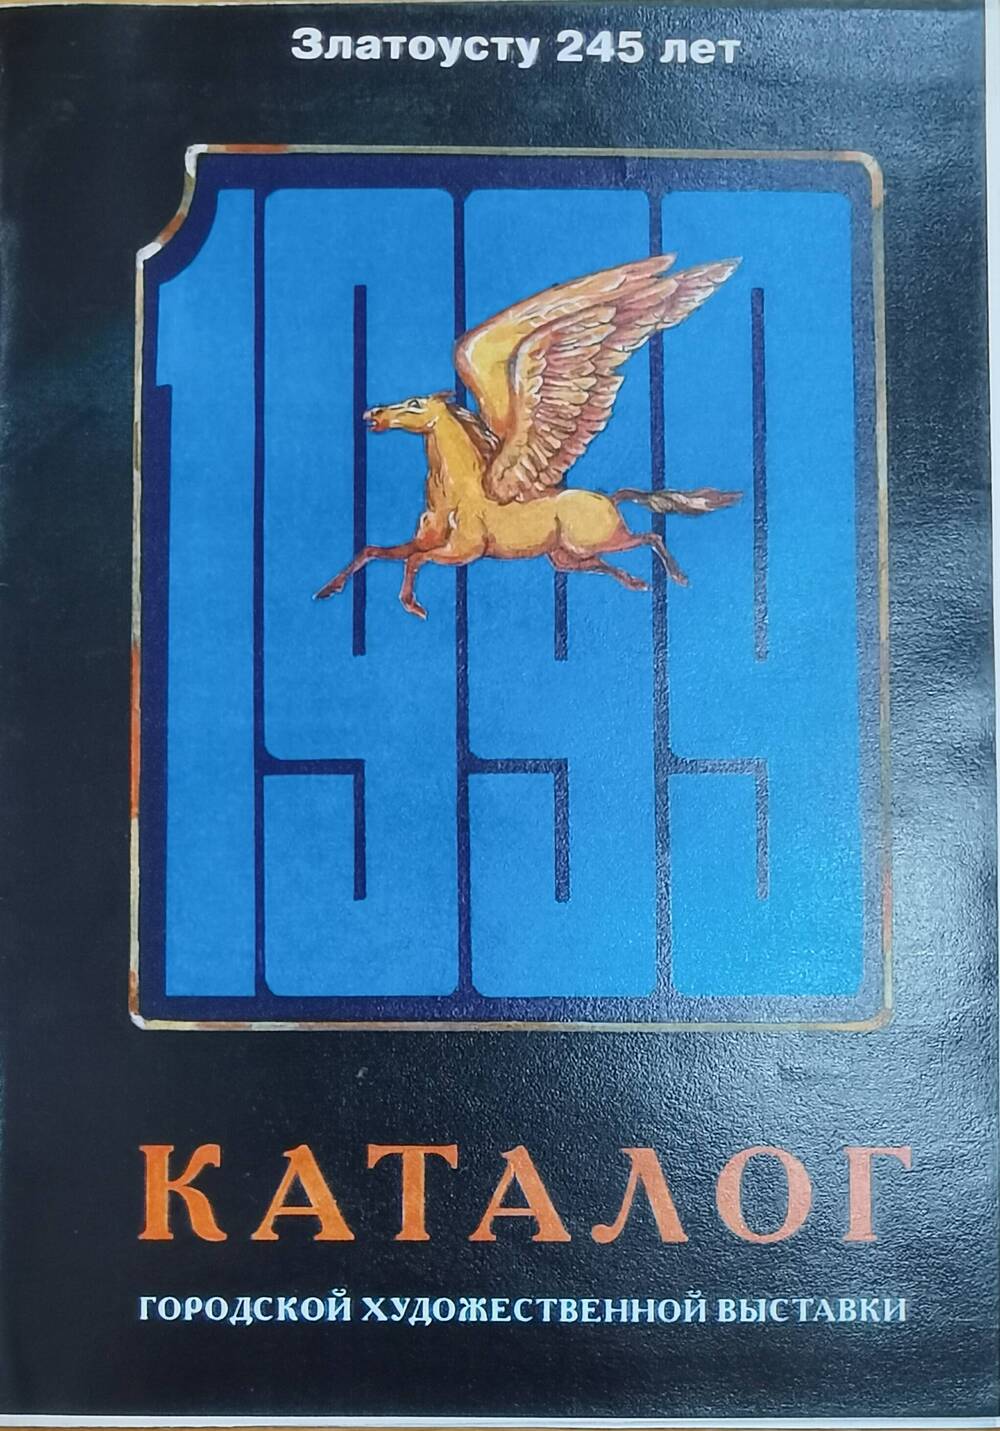 Каталог городской художественной выставки Златоусту-245, 1999 г.